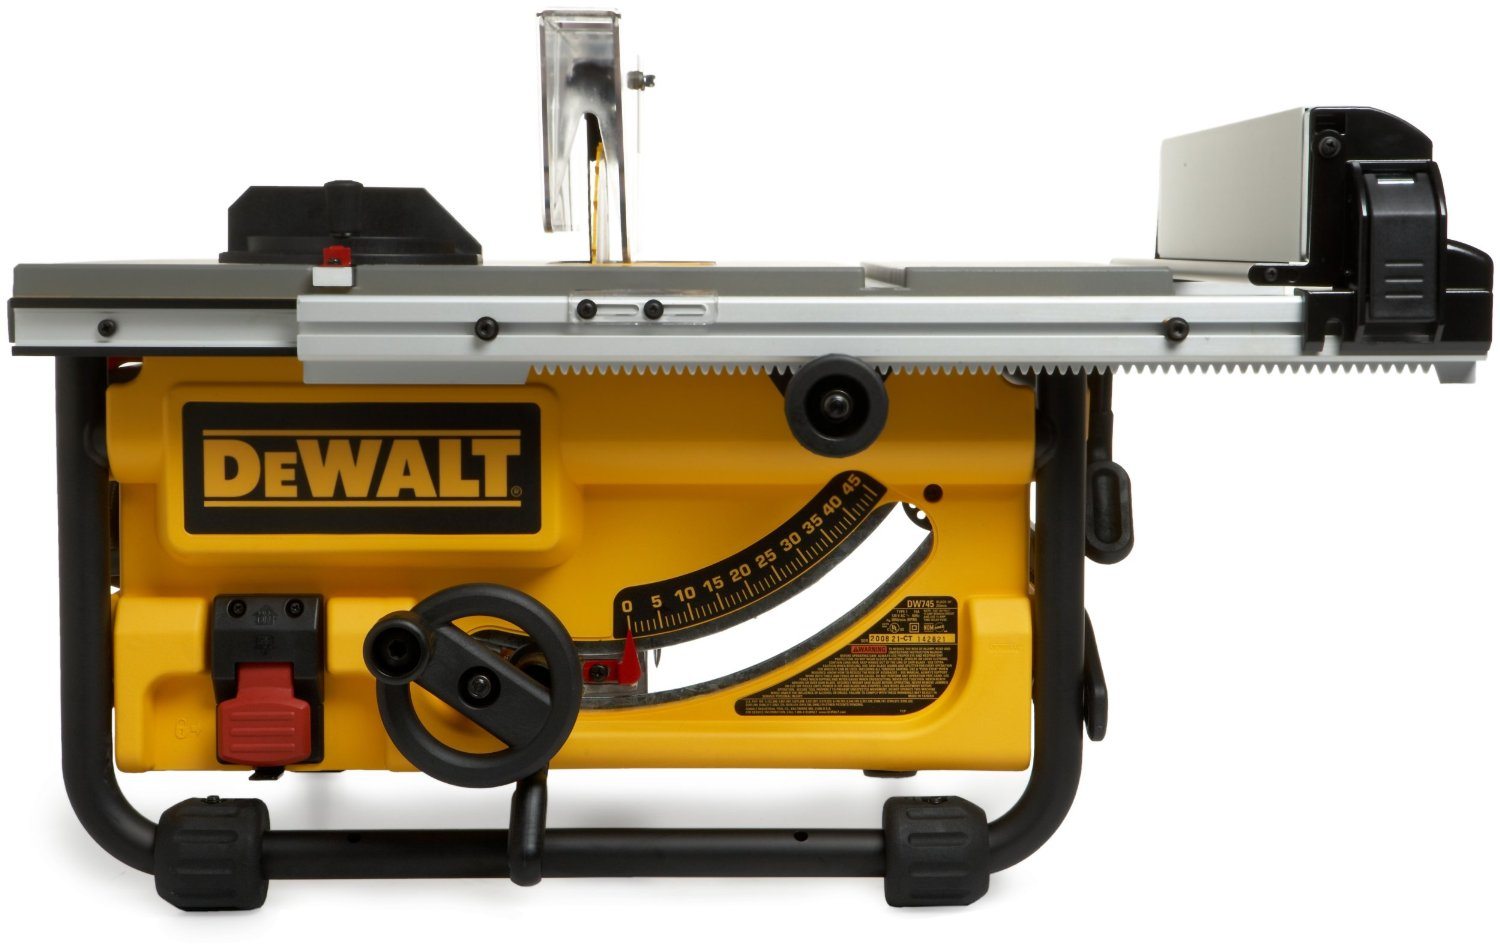 Dewalt DW745 Portable table saws